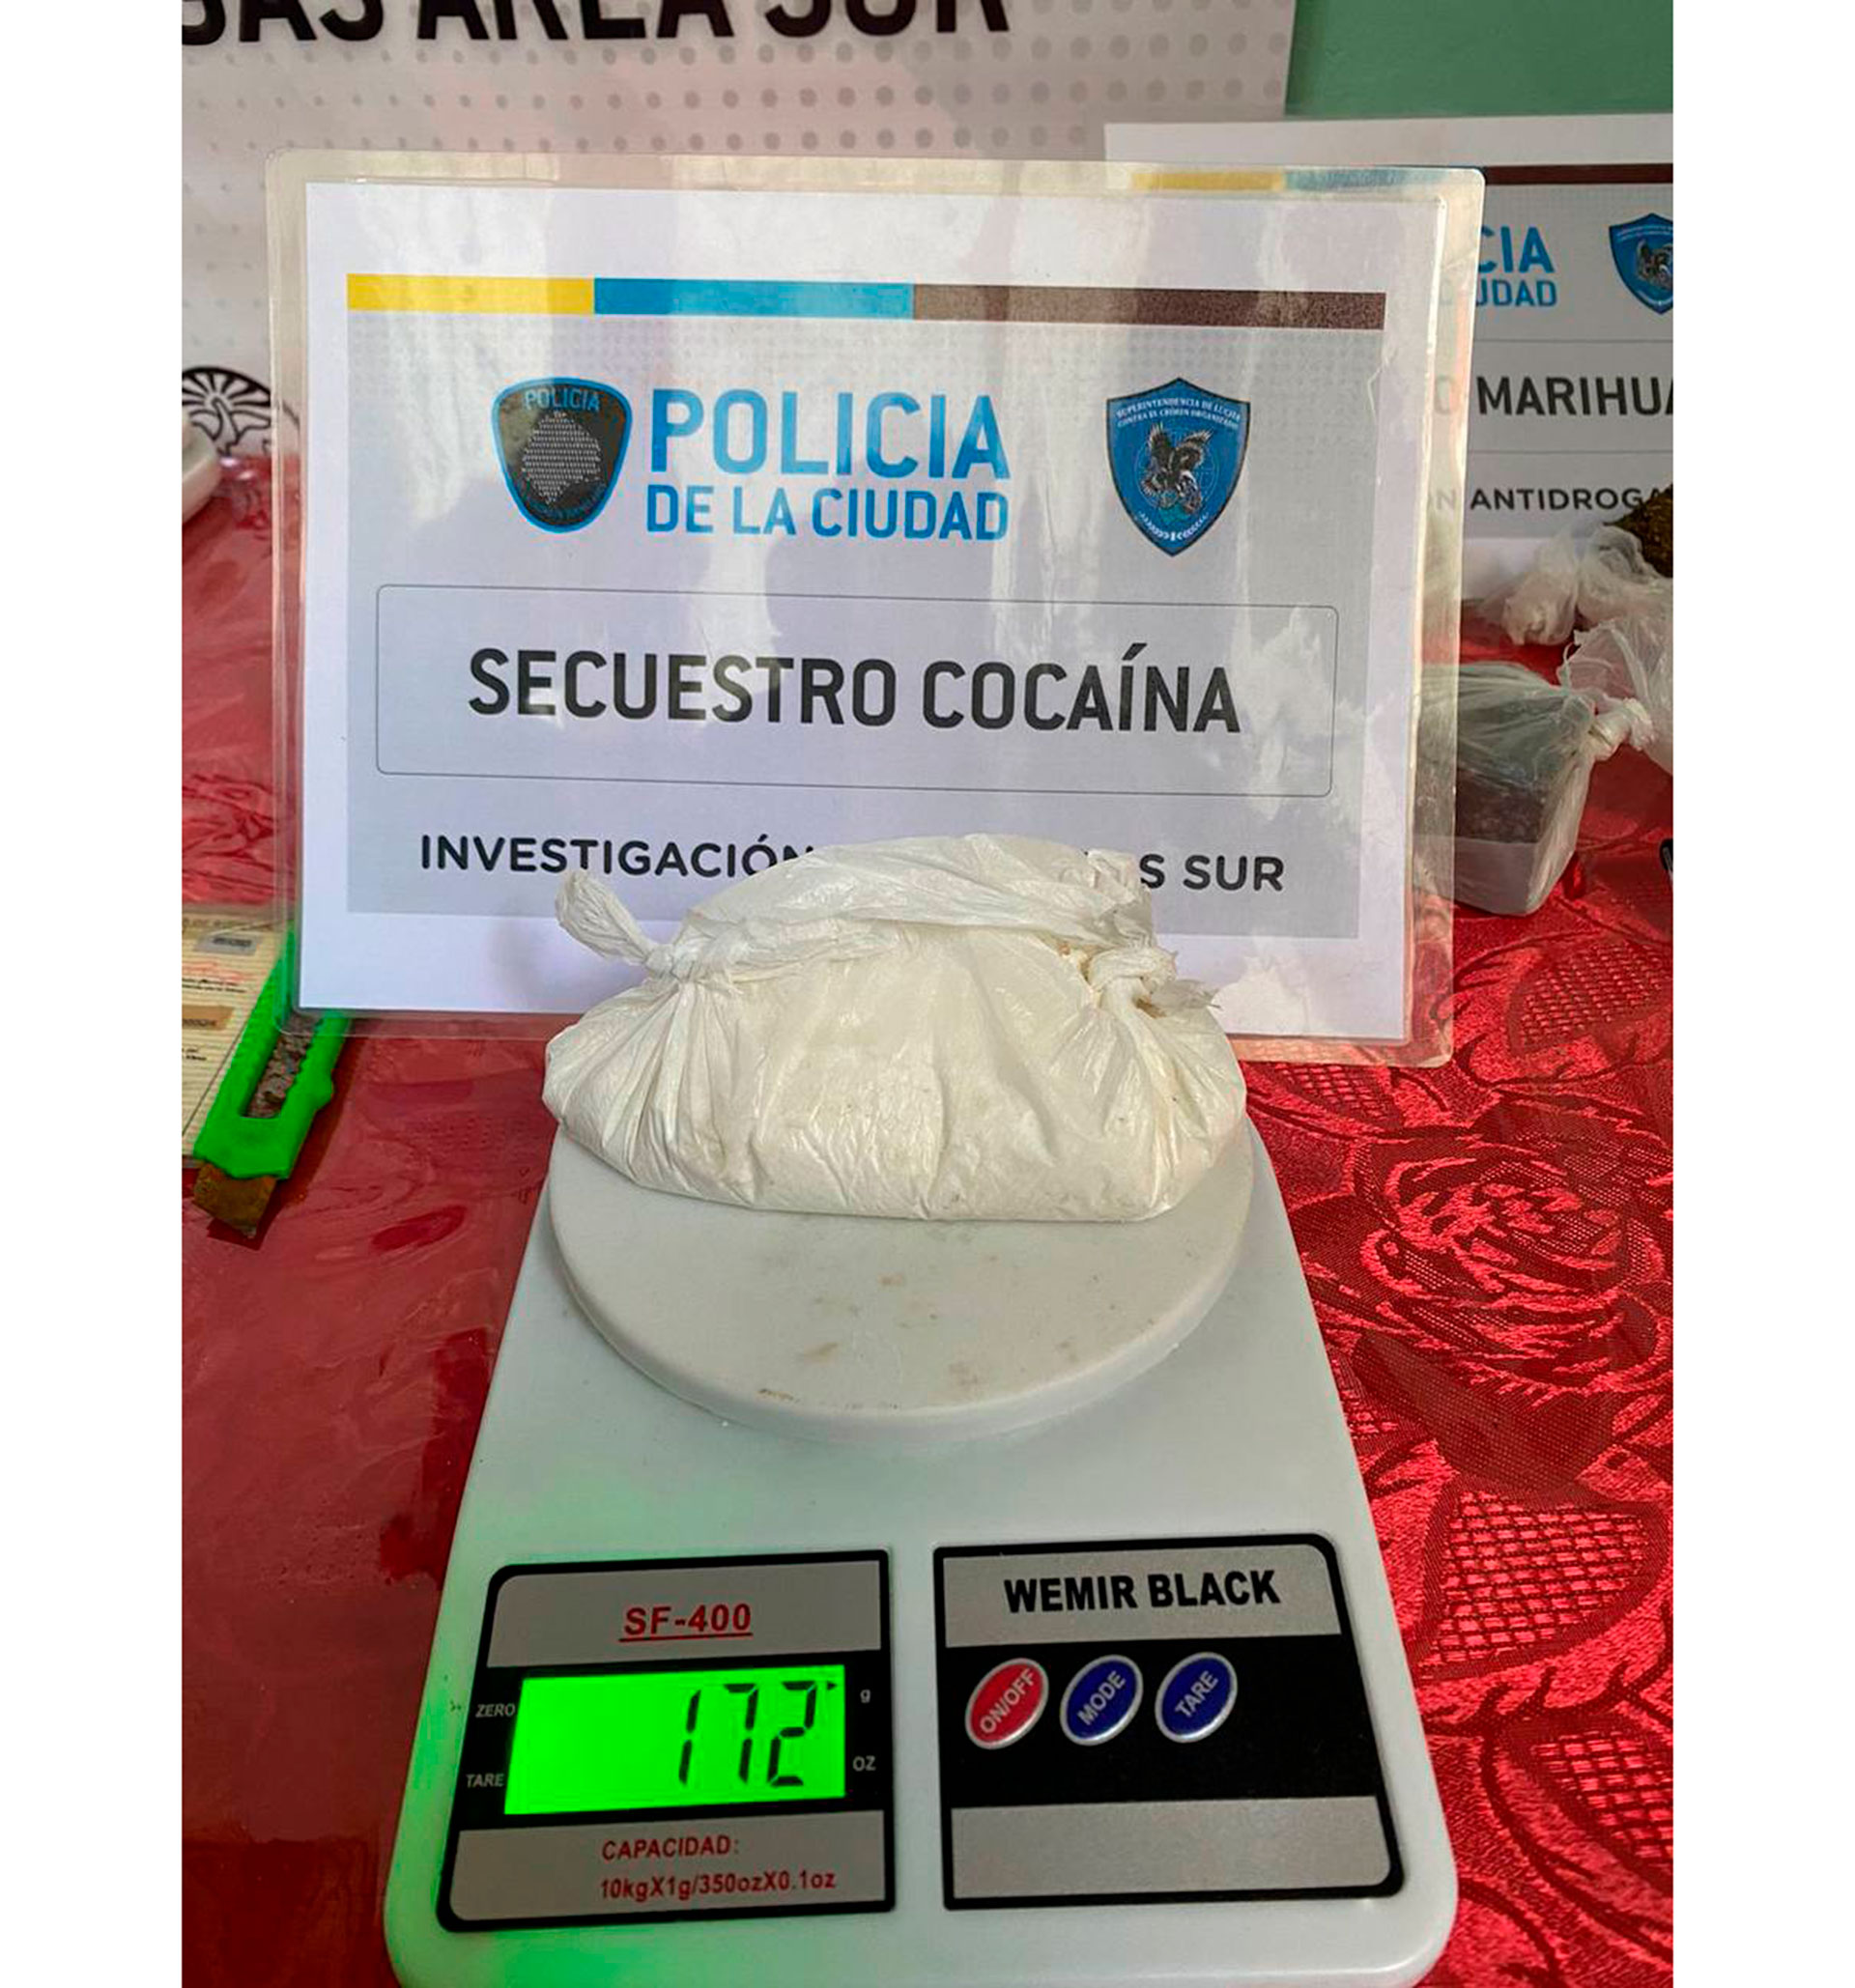 En el departamento que usaban para preparar la droga se encontró una gran cantidad de cocaína